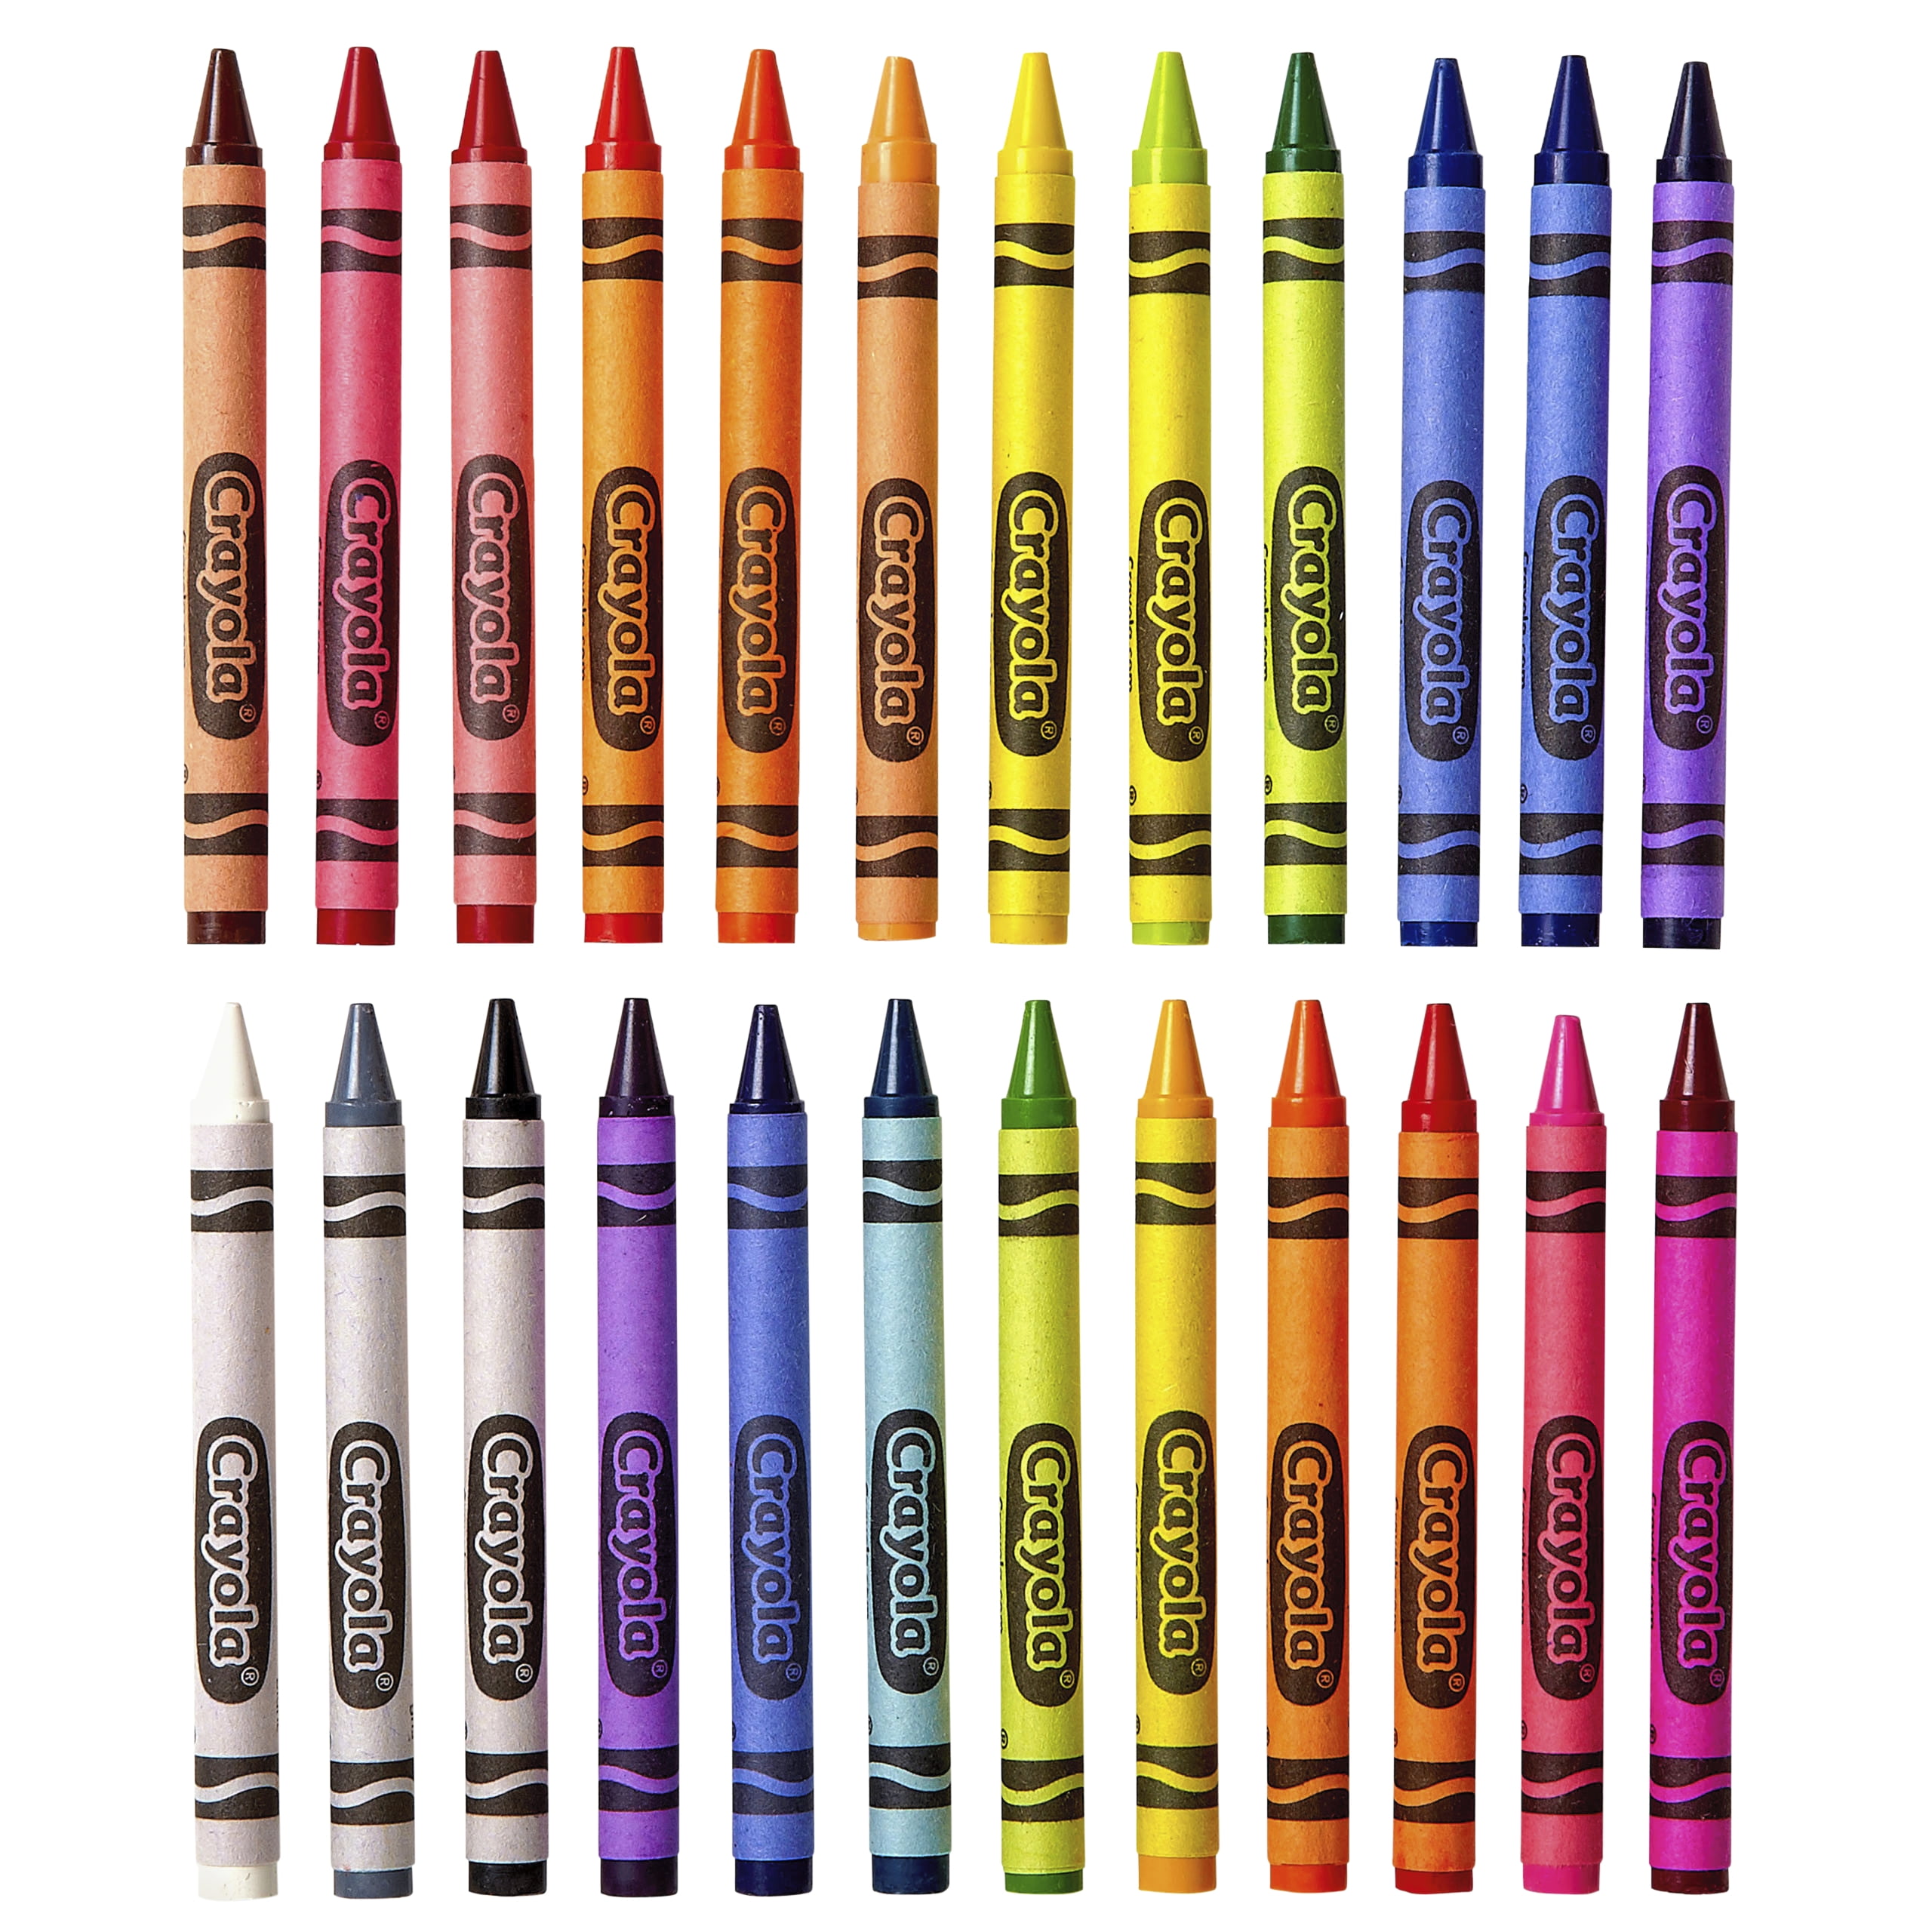 Crayola 52-3024 Crayons In Tuck Box 24 Count: Crayons (071662000240-2)